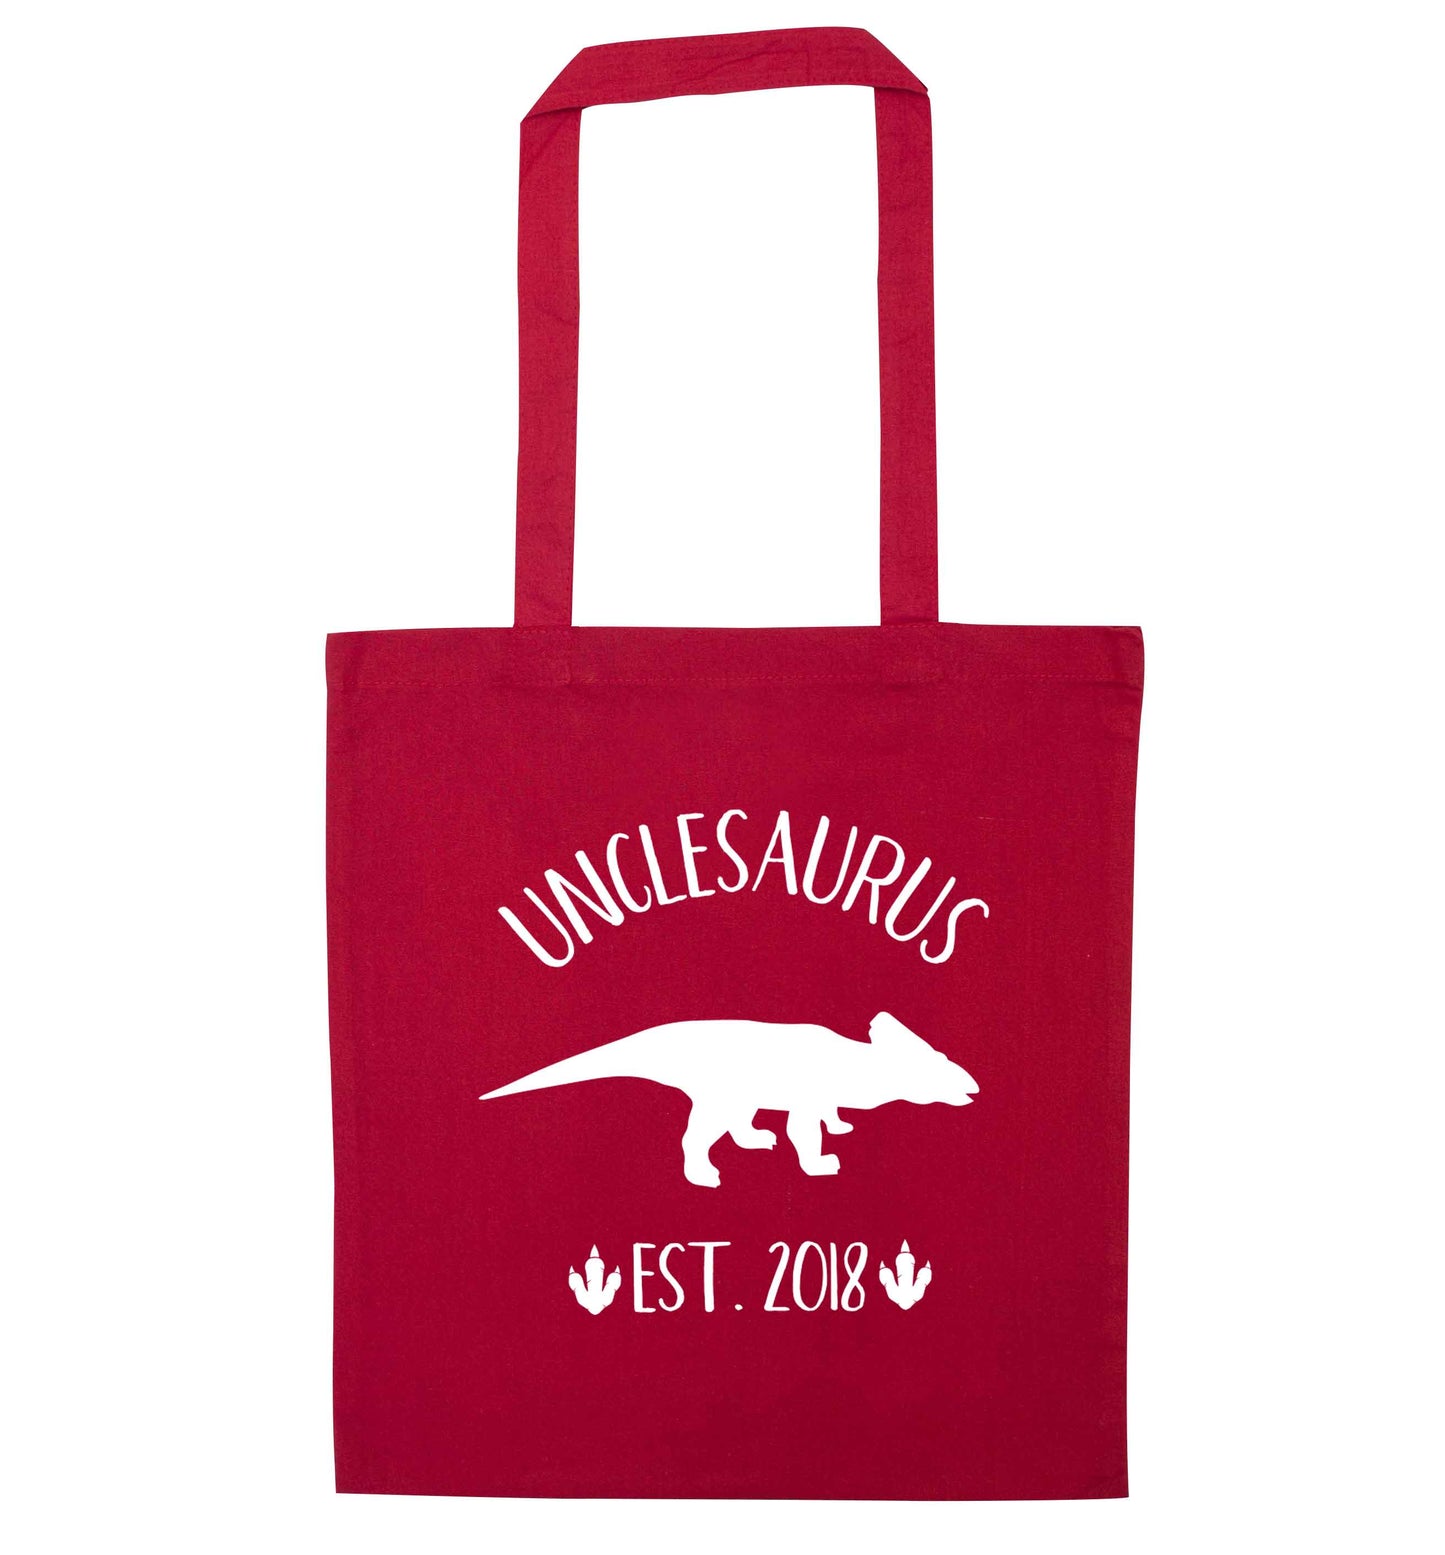 Personalised unclesaurus since (custom date) red tote bag